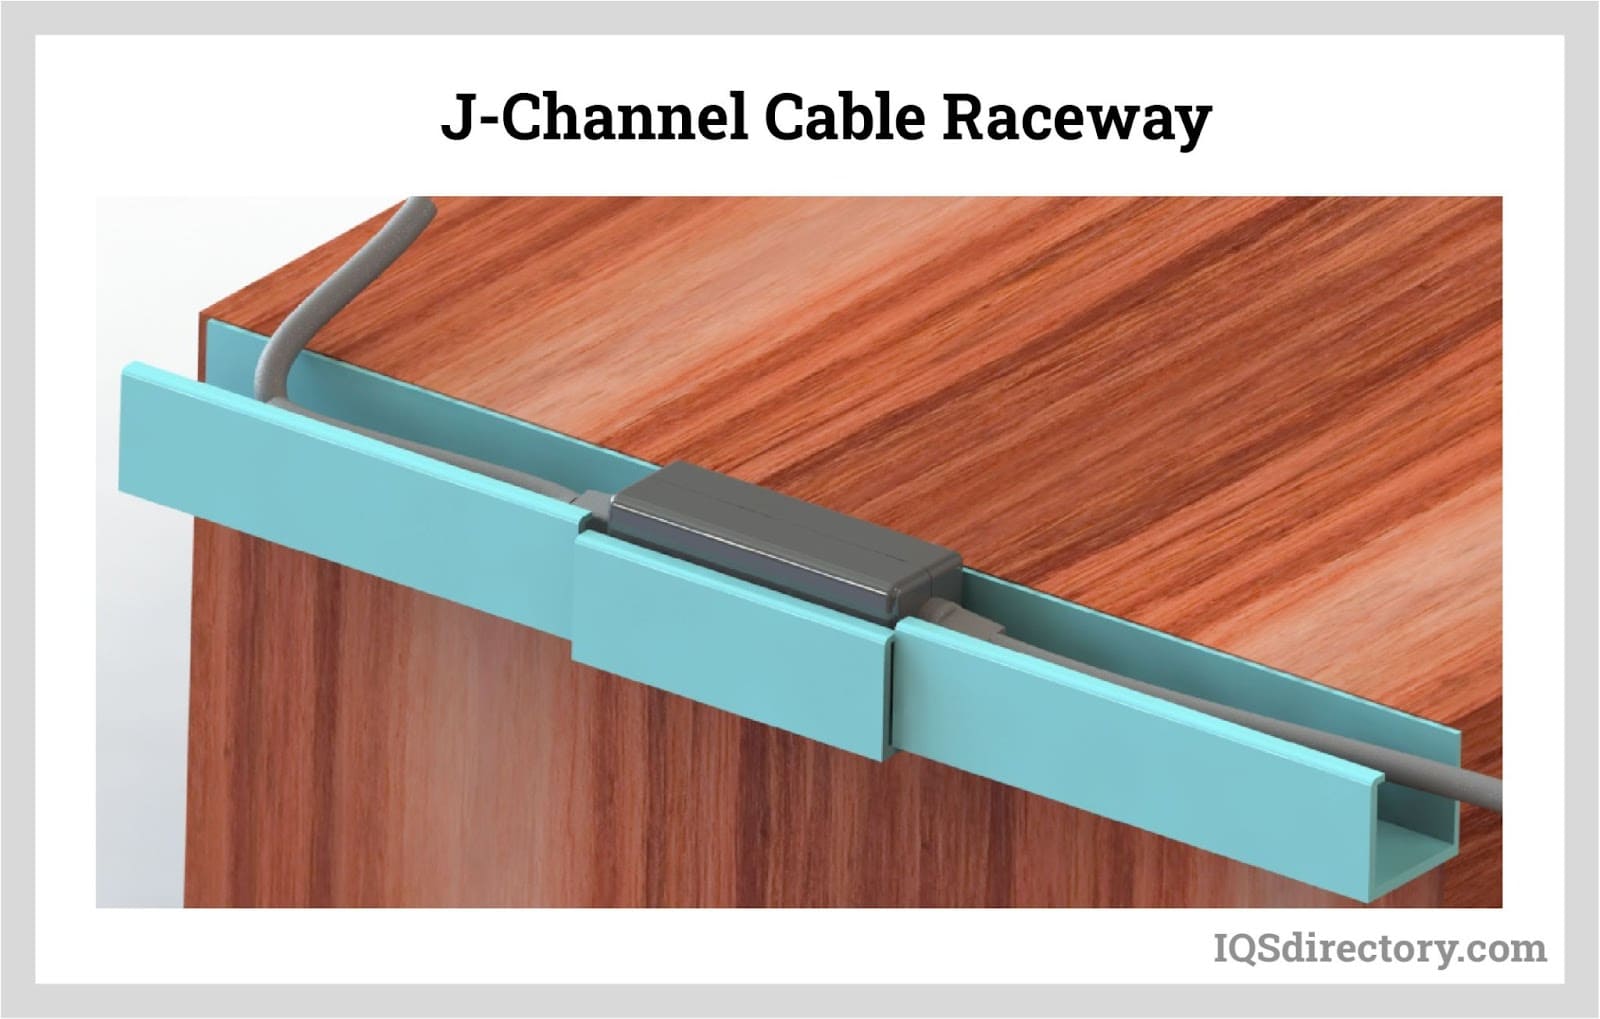 J-Channel Cable Raceway